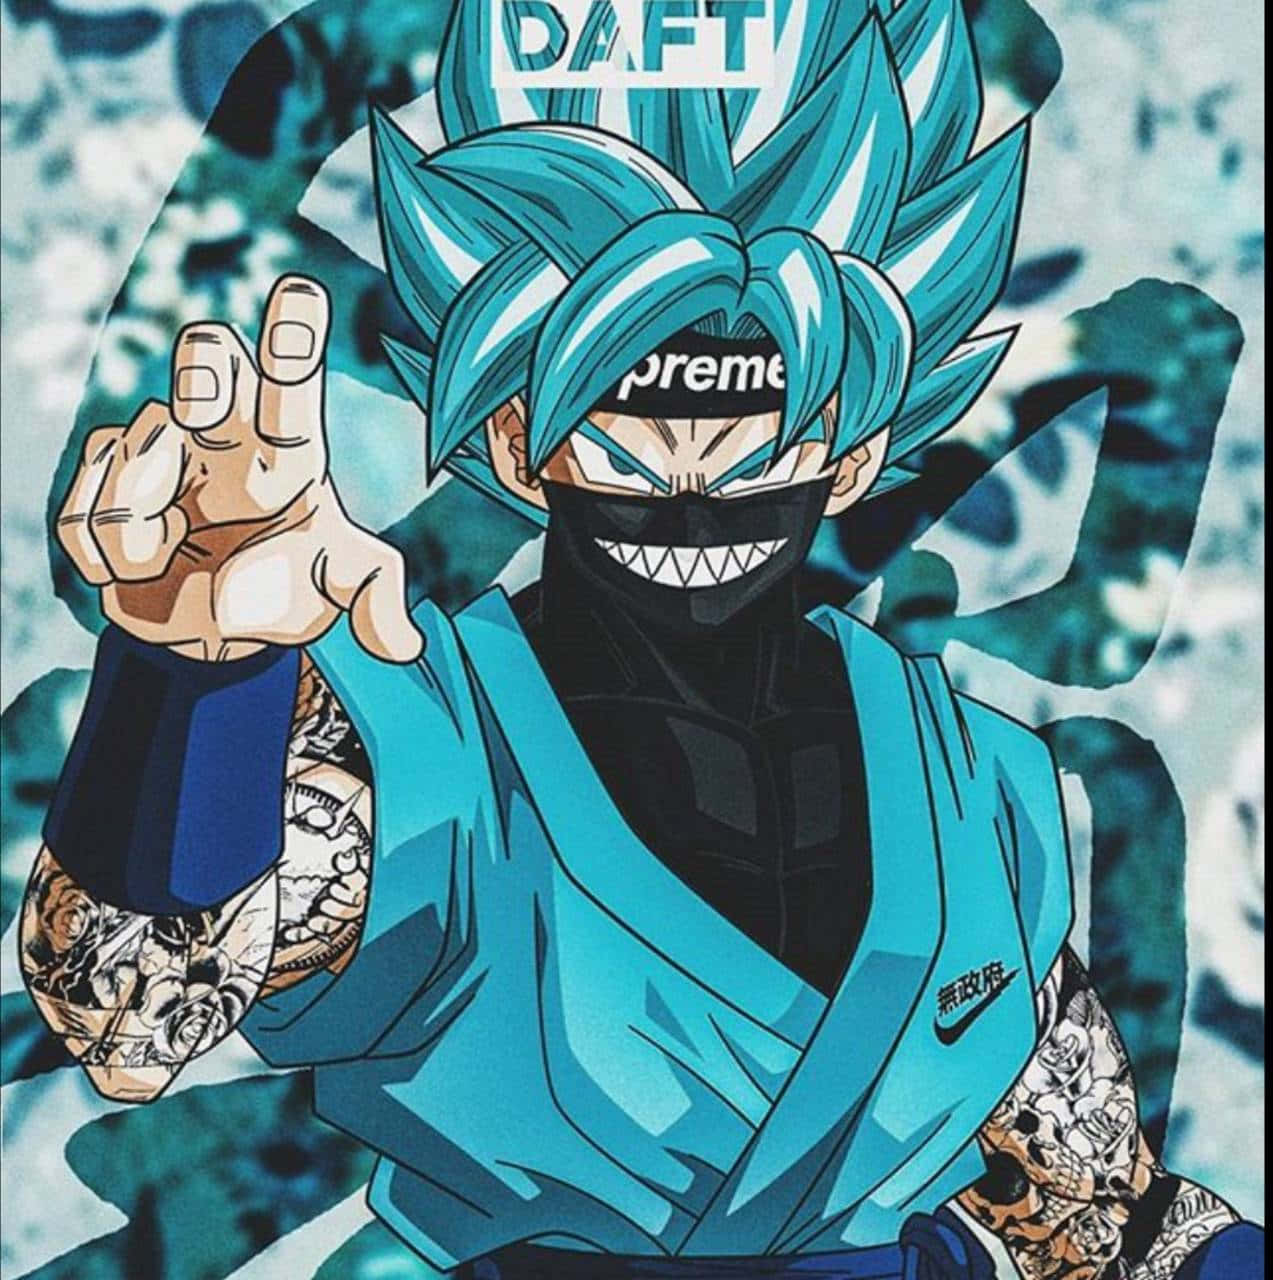 Intaen Hjältemodig Posering Med Goku Supreme! Wallpaper